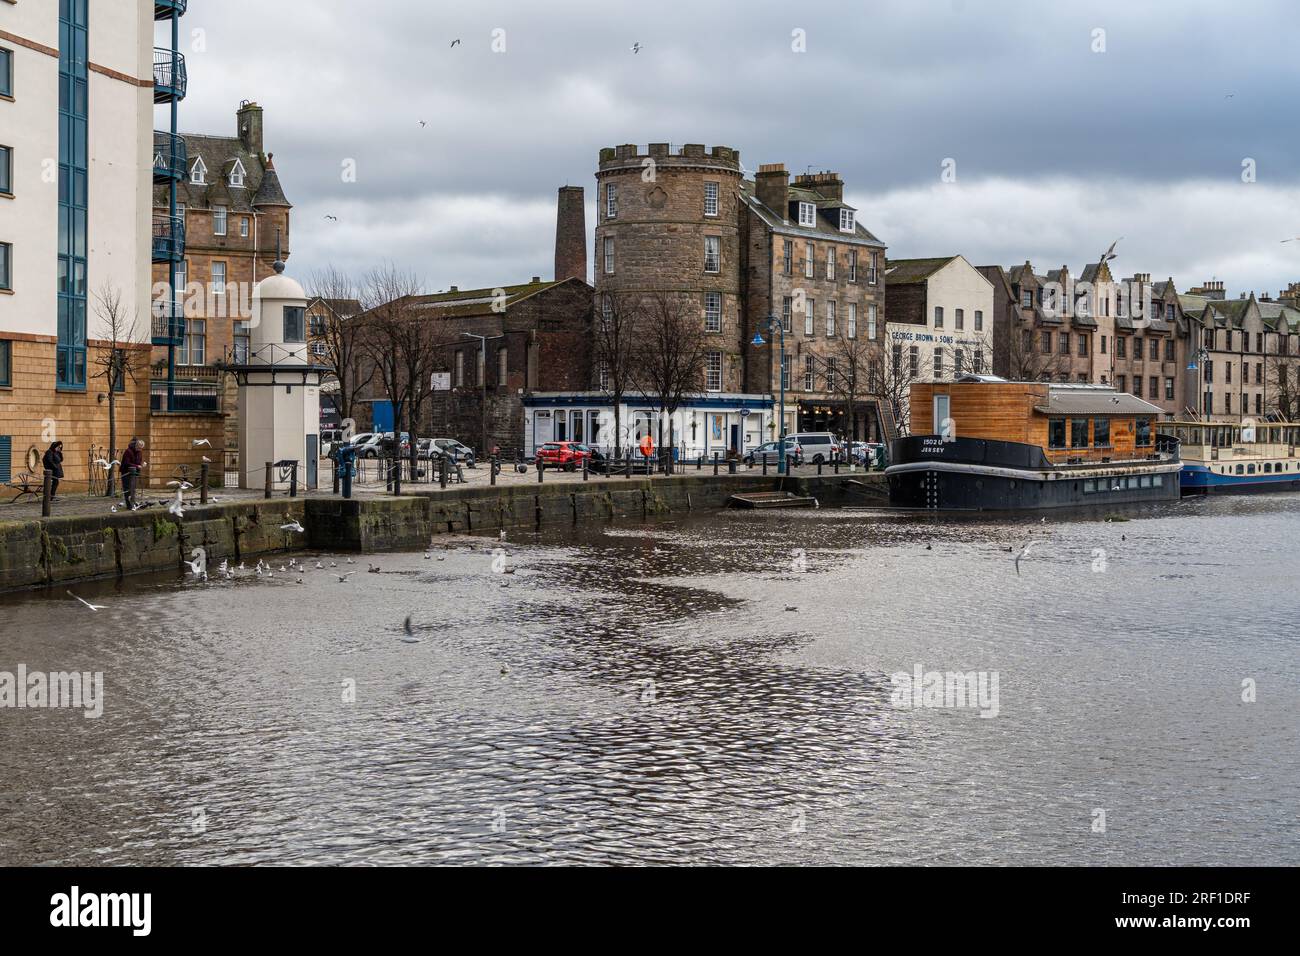 Blick auf das Stadtviertel Leith, das Hafenviertel von Edinburgh, voller typischer Pubs und Restaurants Stockfoto